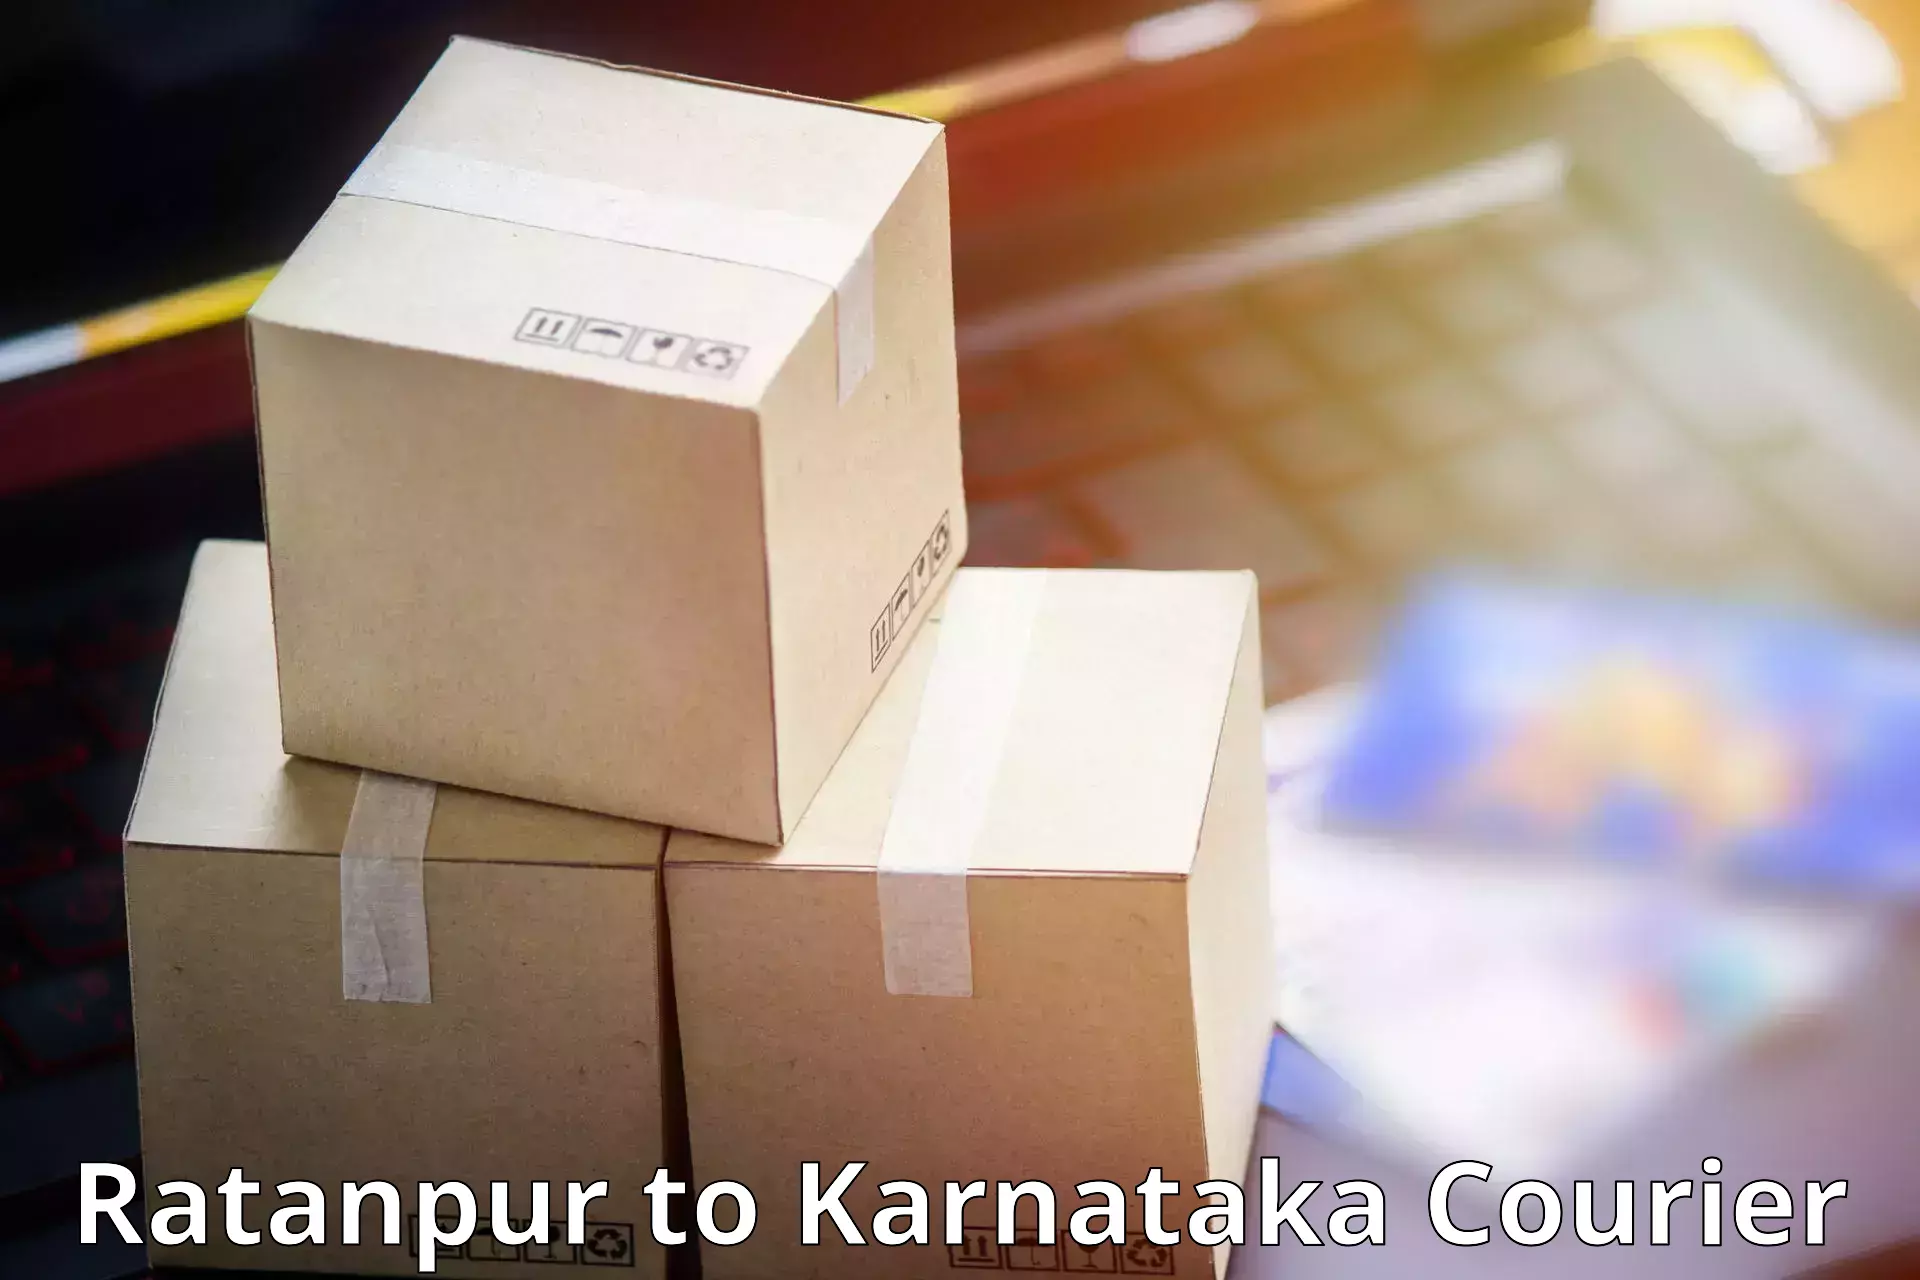 Affordable parcel service Ratanpur to Karwar